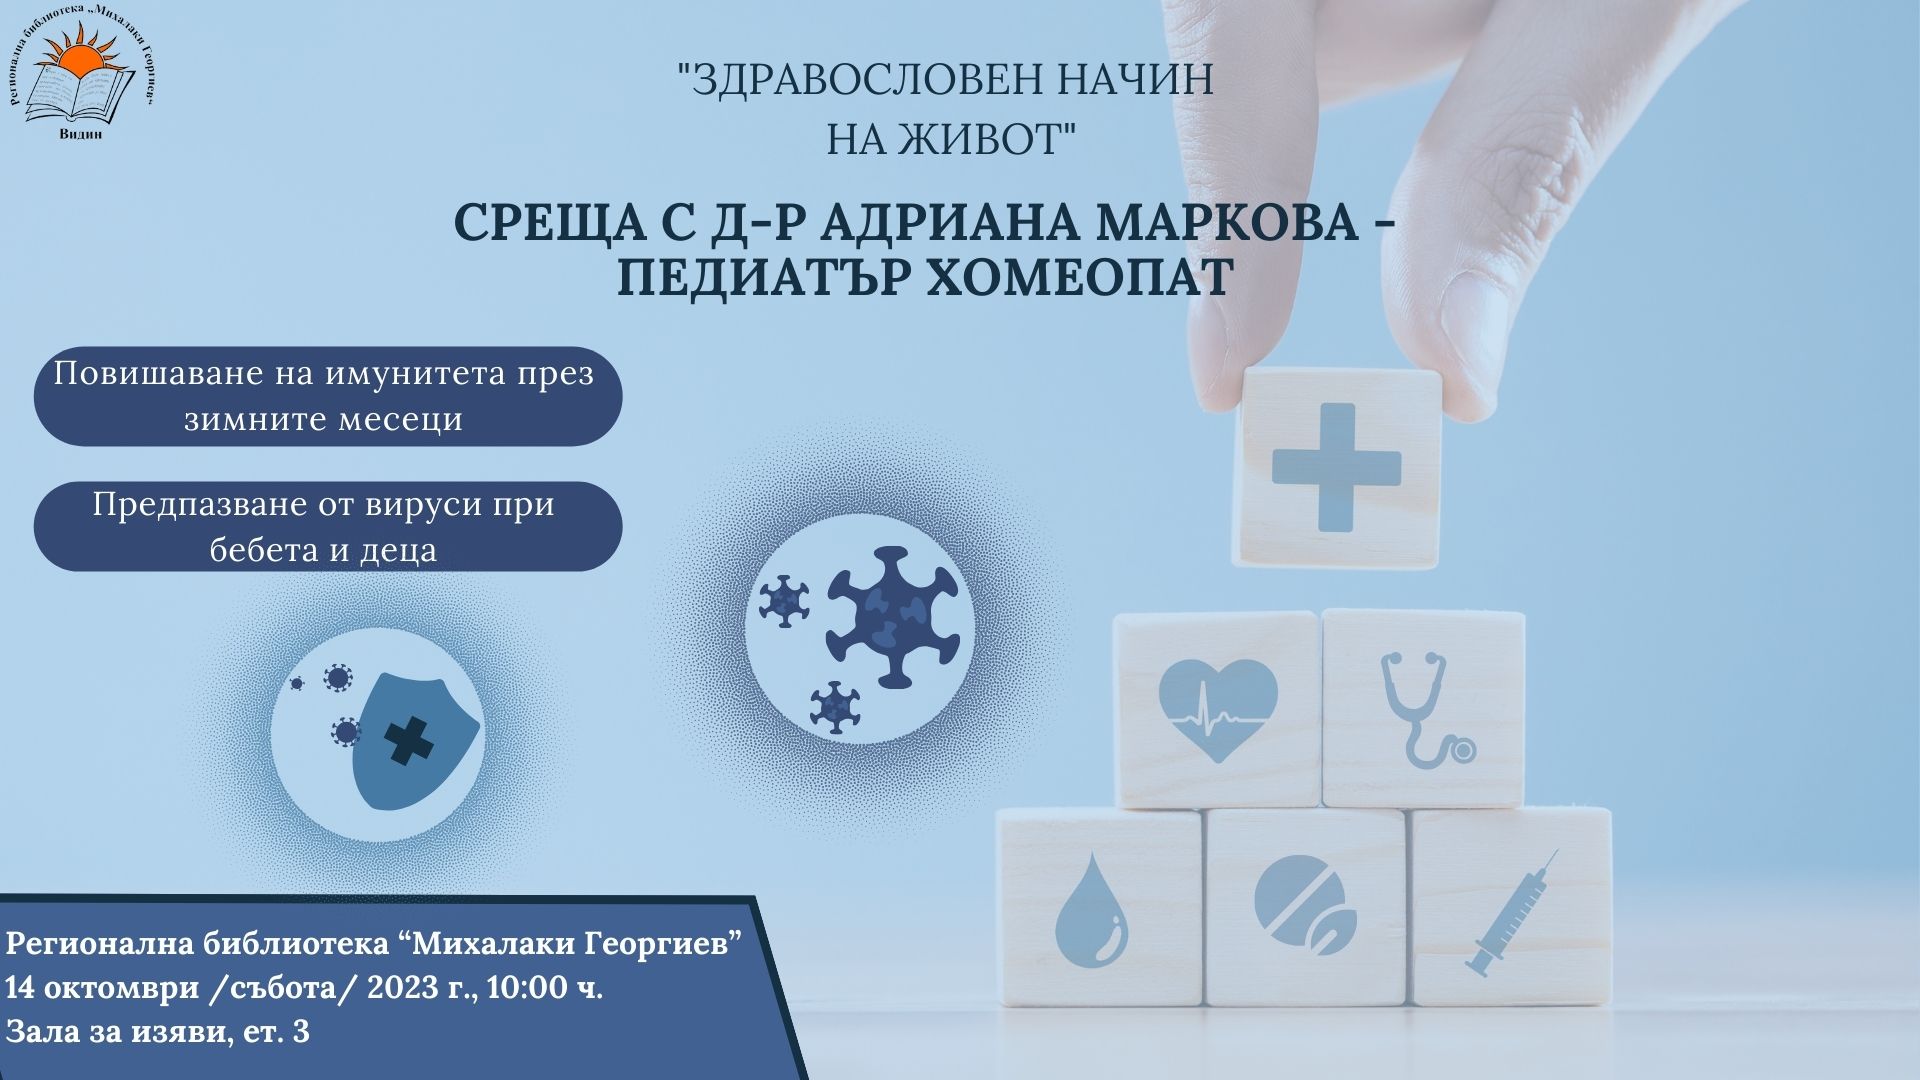 Среща с д-р Адриaна Маркова - Педиатър хомеопат